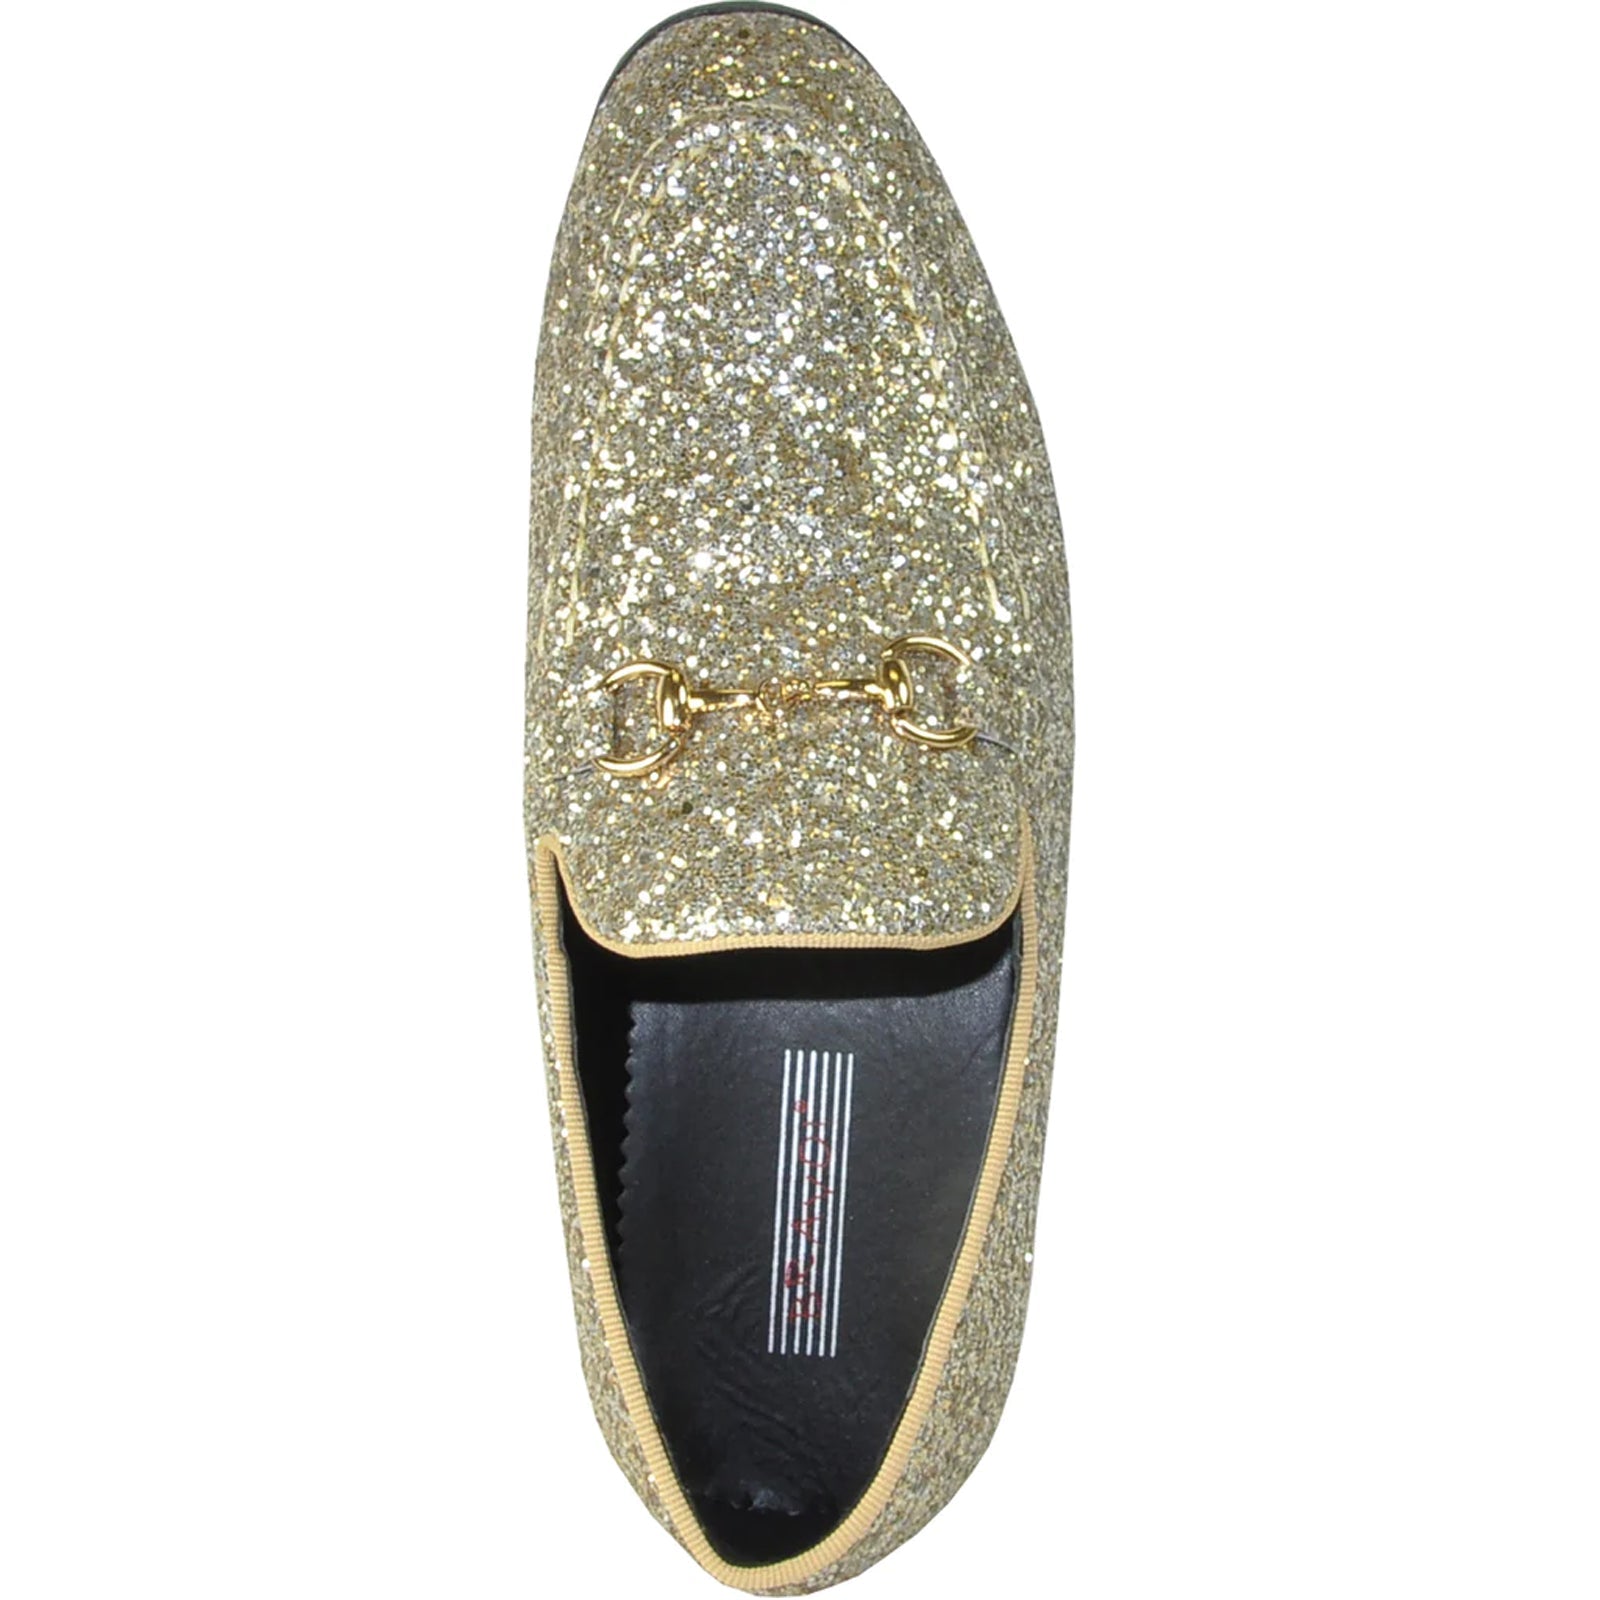 "Gold Sequin Prom Tuxedo Loafers - Modern Men's Glitter Footwear"